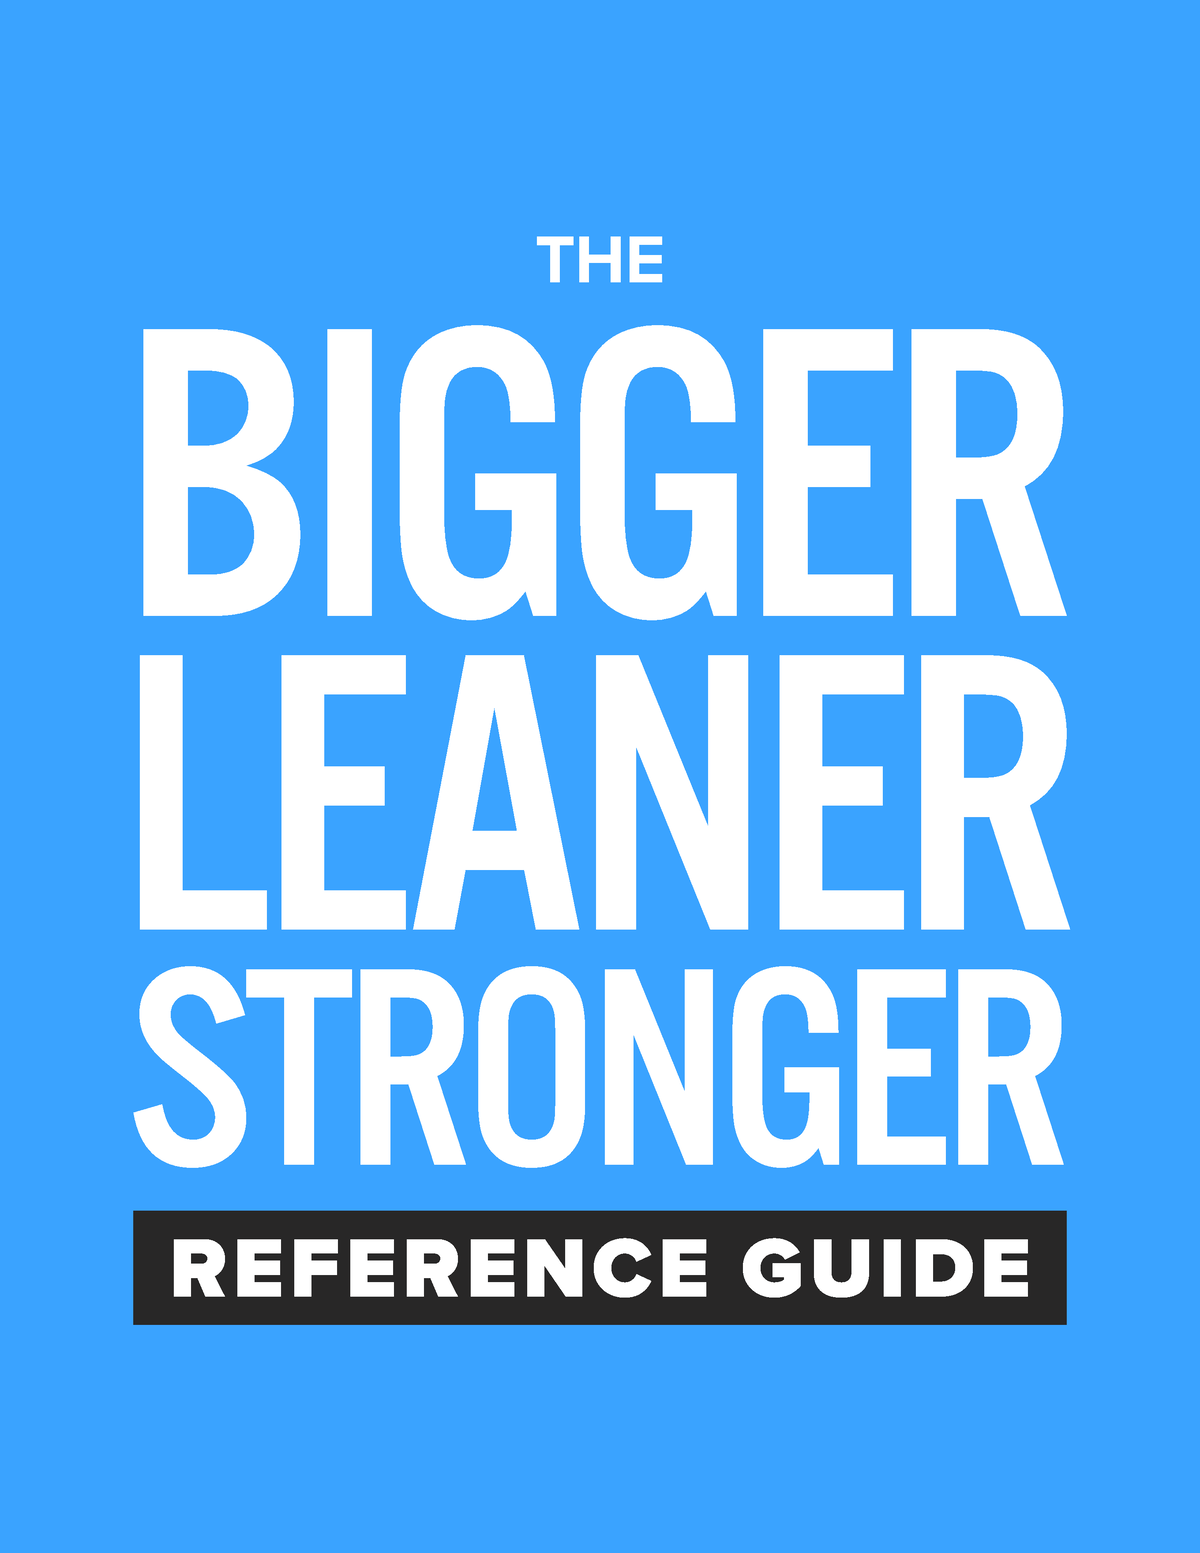 bigger leaner stronger audiobook